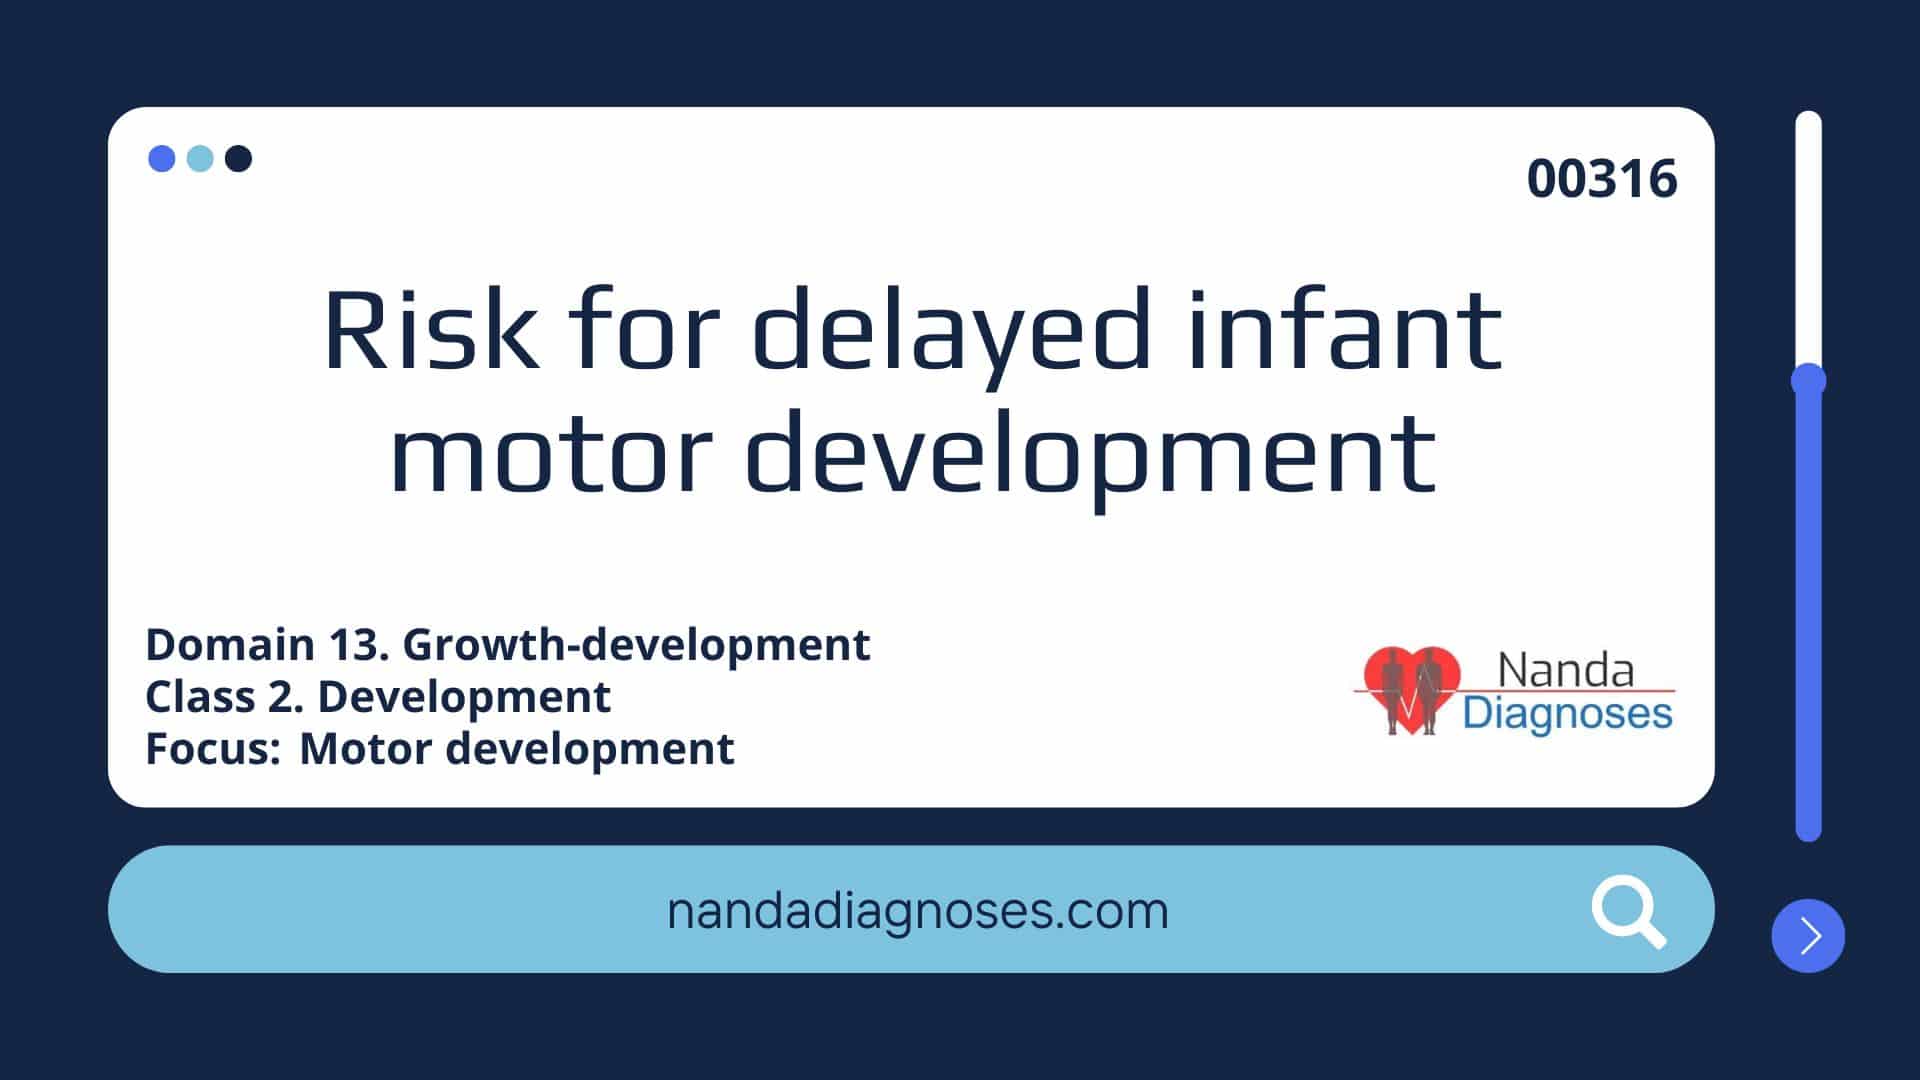 Nursing diagnosis Risk for delayed infant motor development